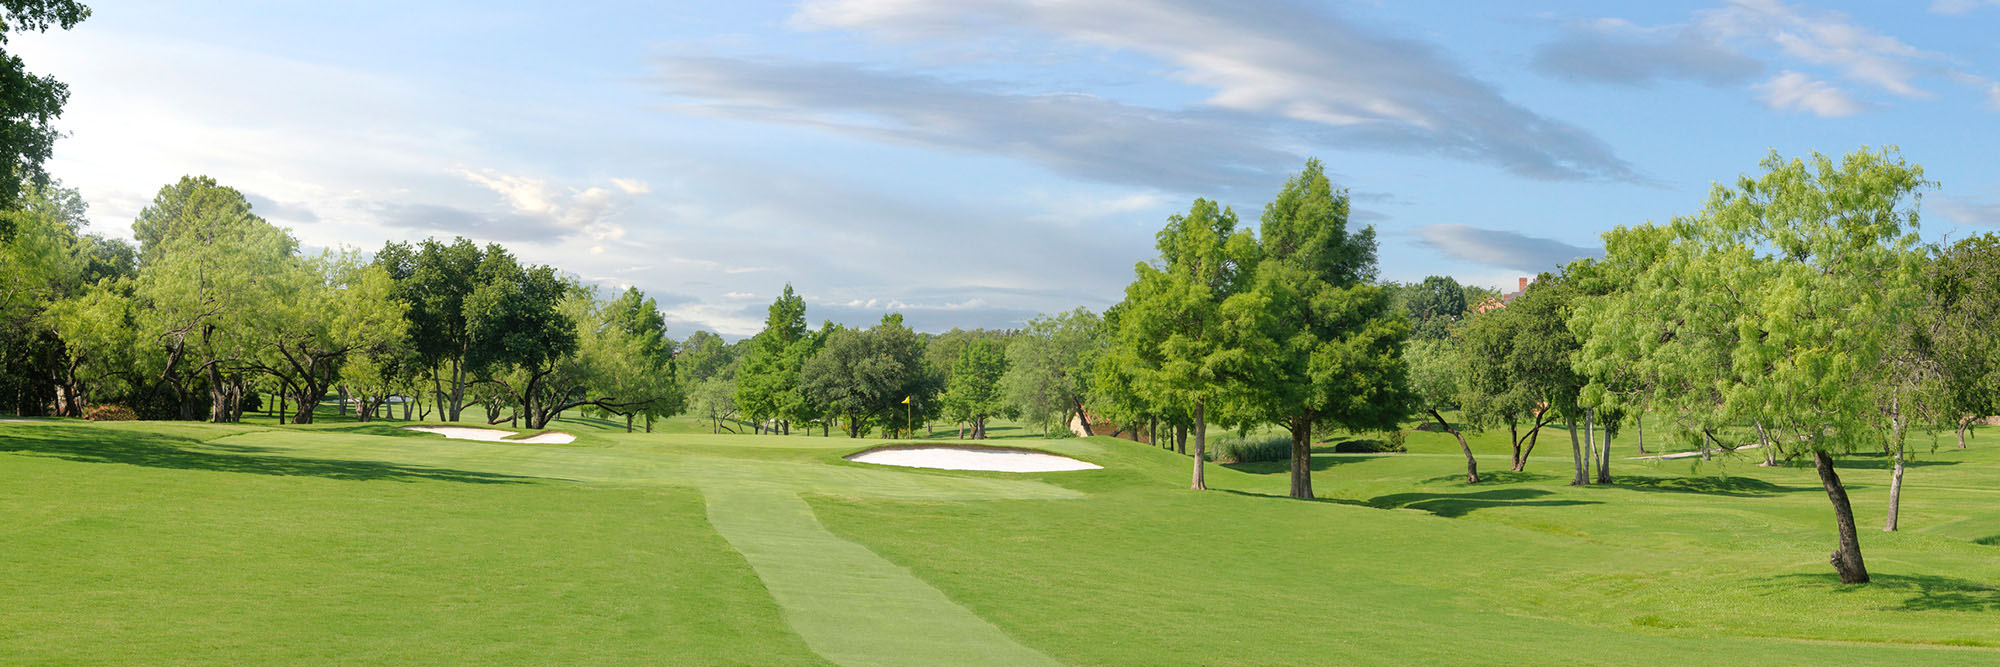 Golf Course Image - Las Colinas No. 11